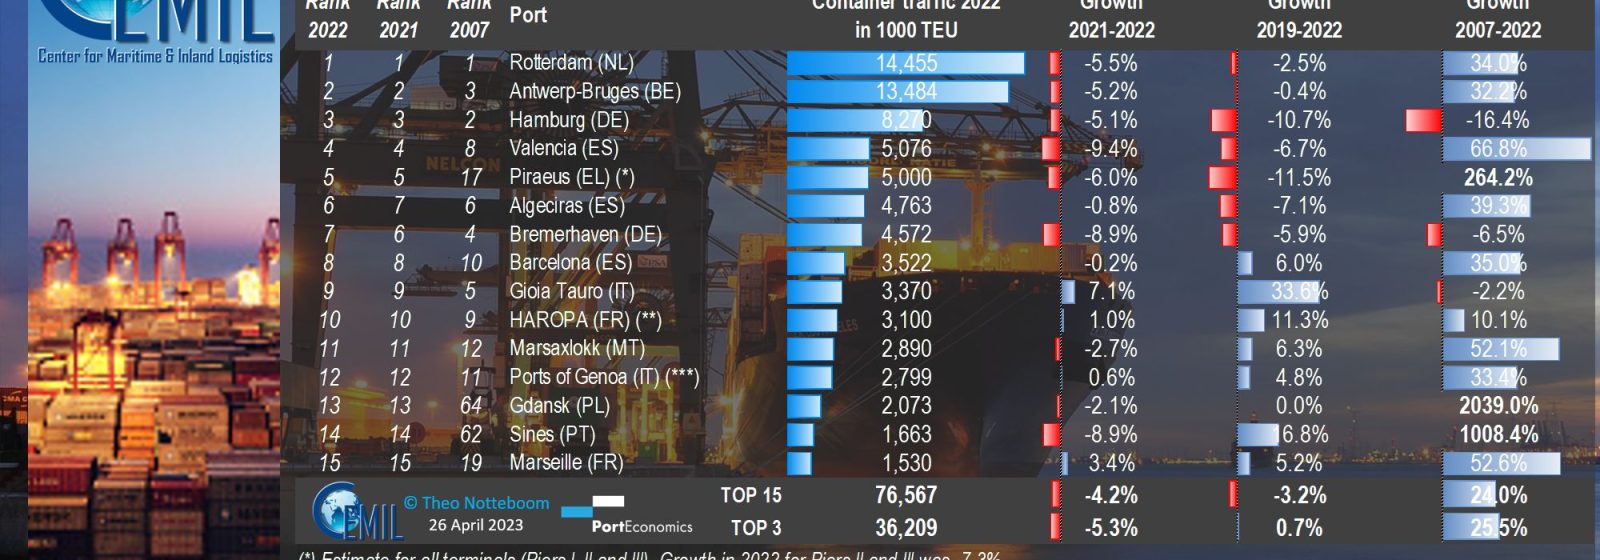 Tabel met de 15 grootste containerhavens in Europa